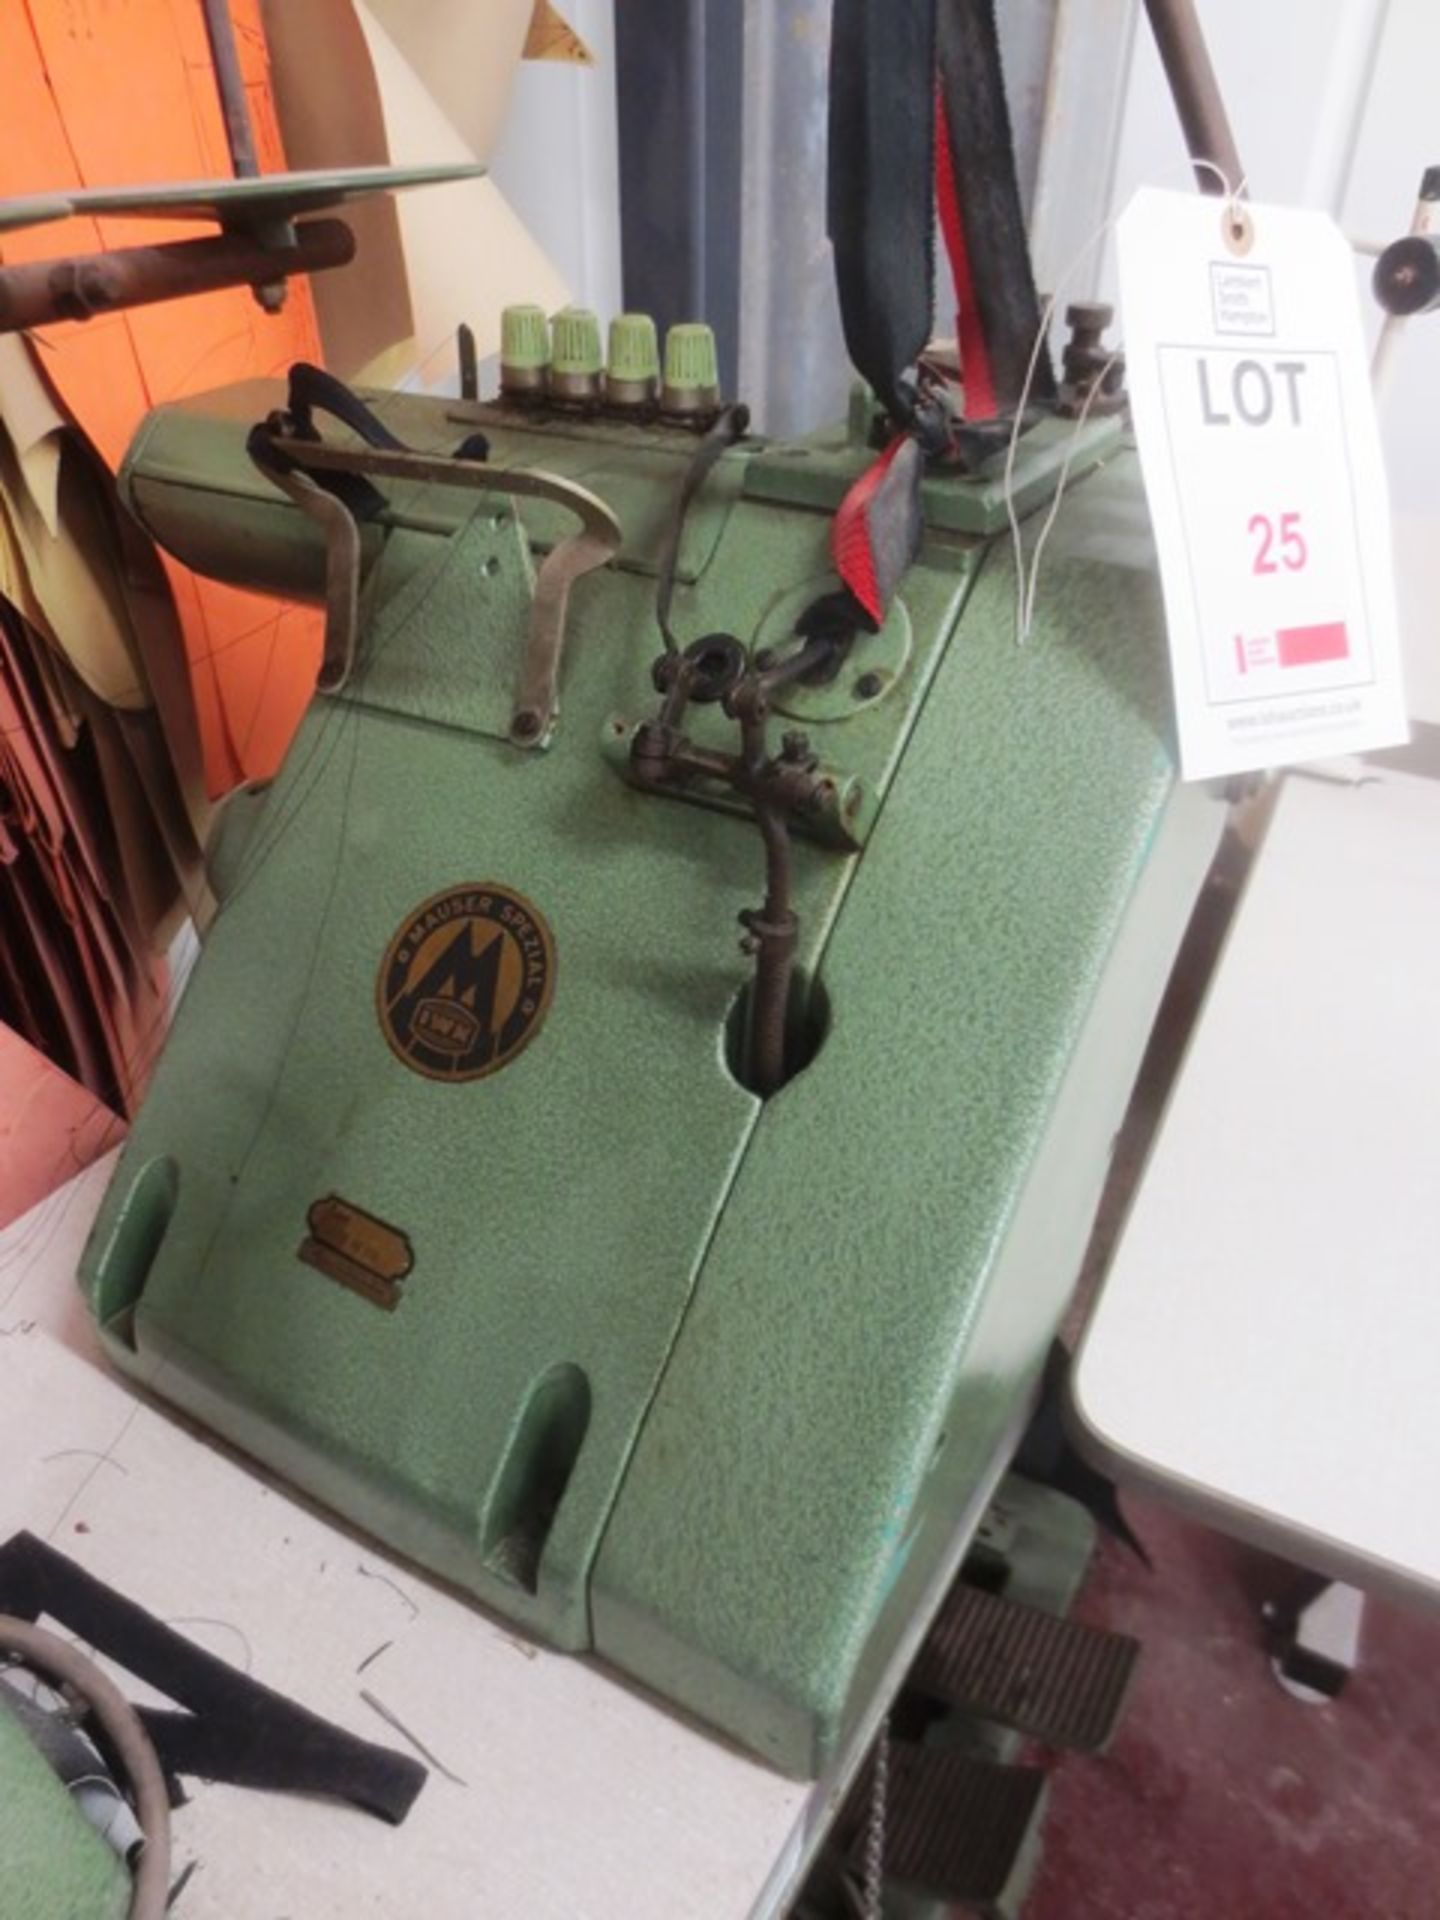 Pfaff Mauser Spezial lock stitch 4 thread sewing machine, type CST 46100 - Image 3 of 4